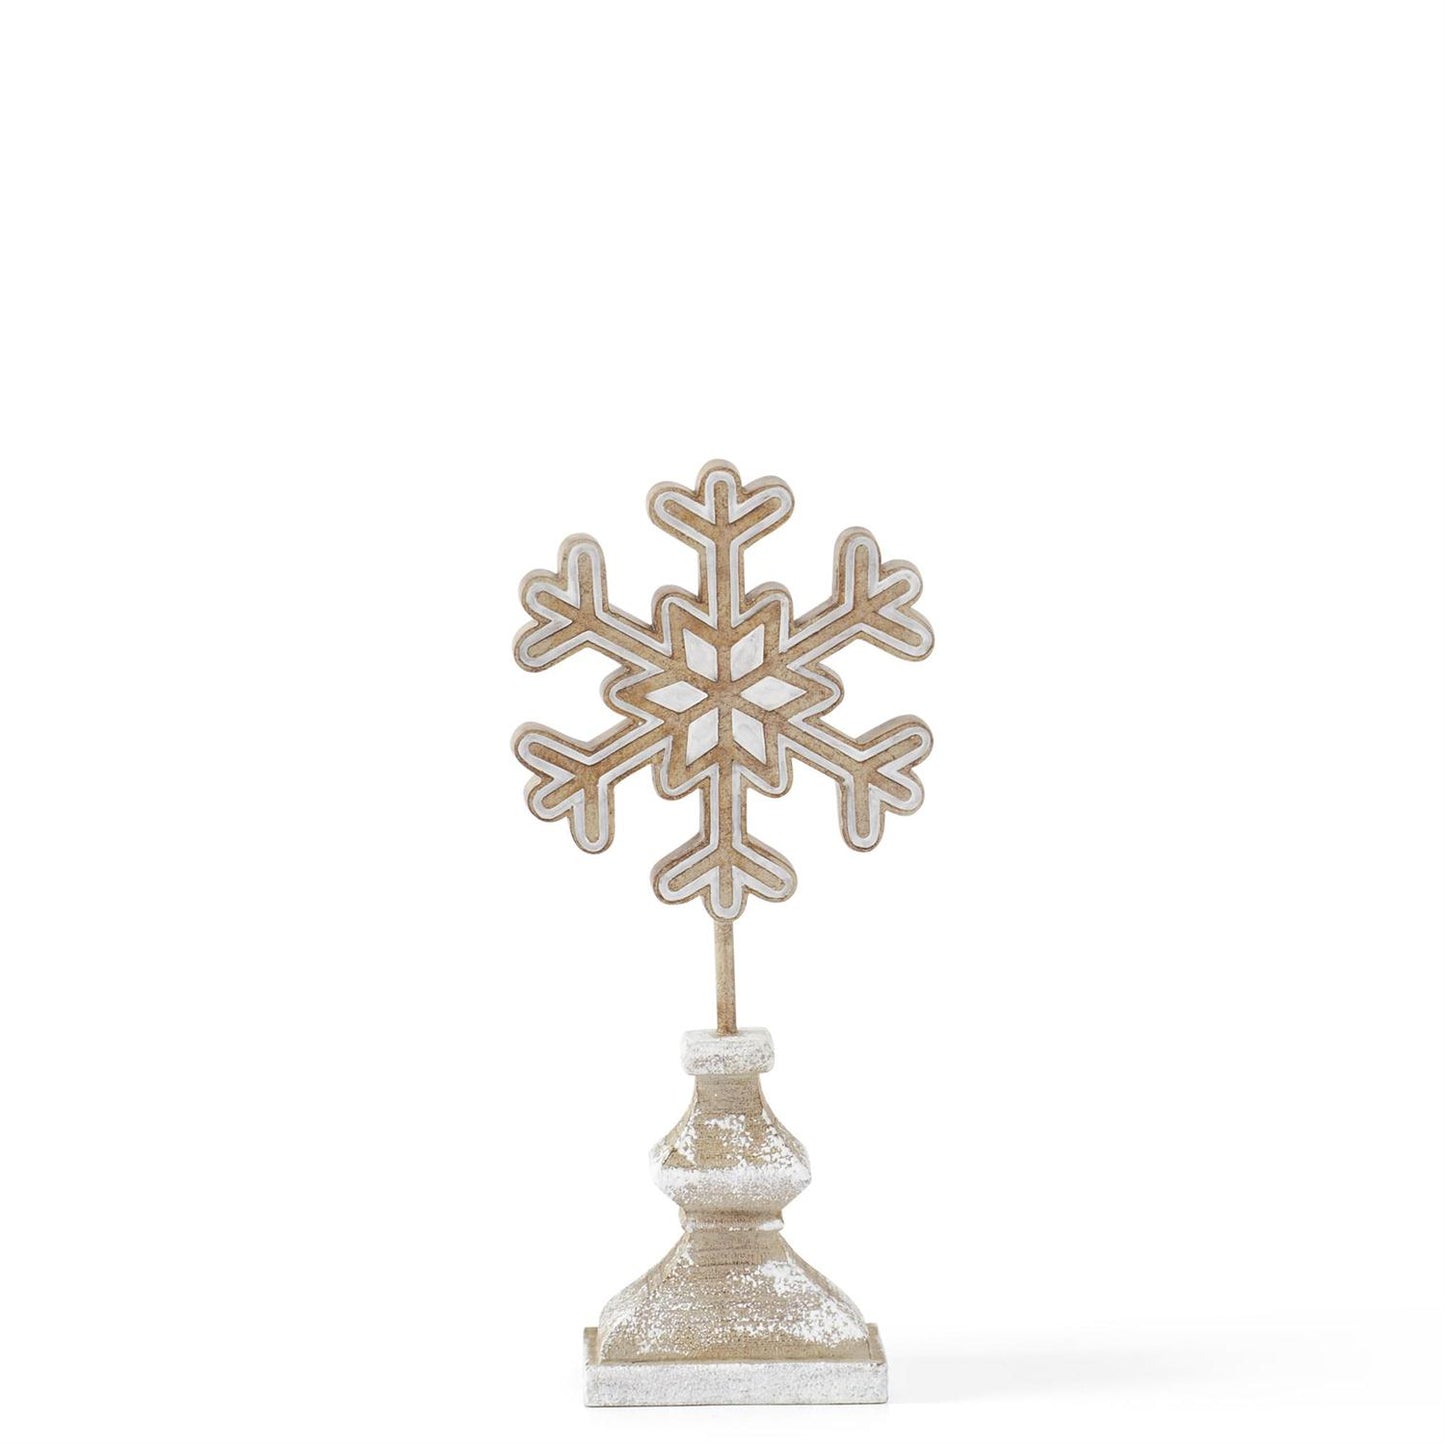 White & Tan Resin Snowflakes on Spindle (Various Sizes)